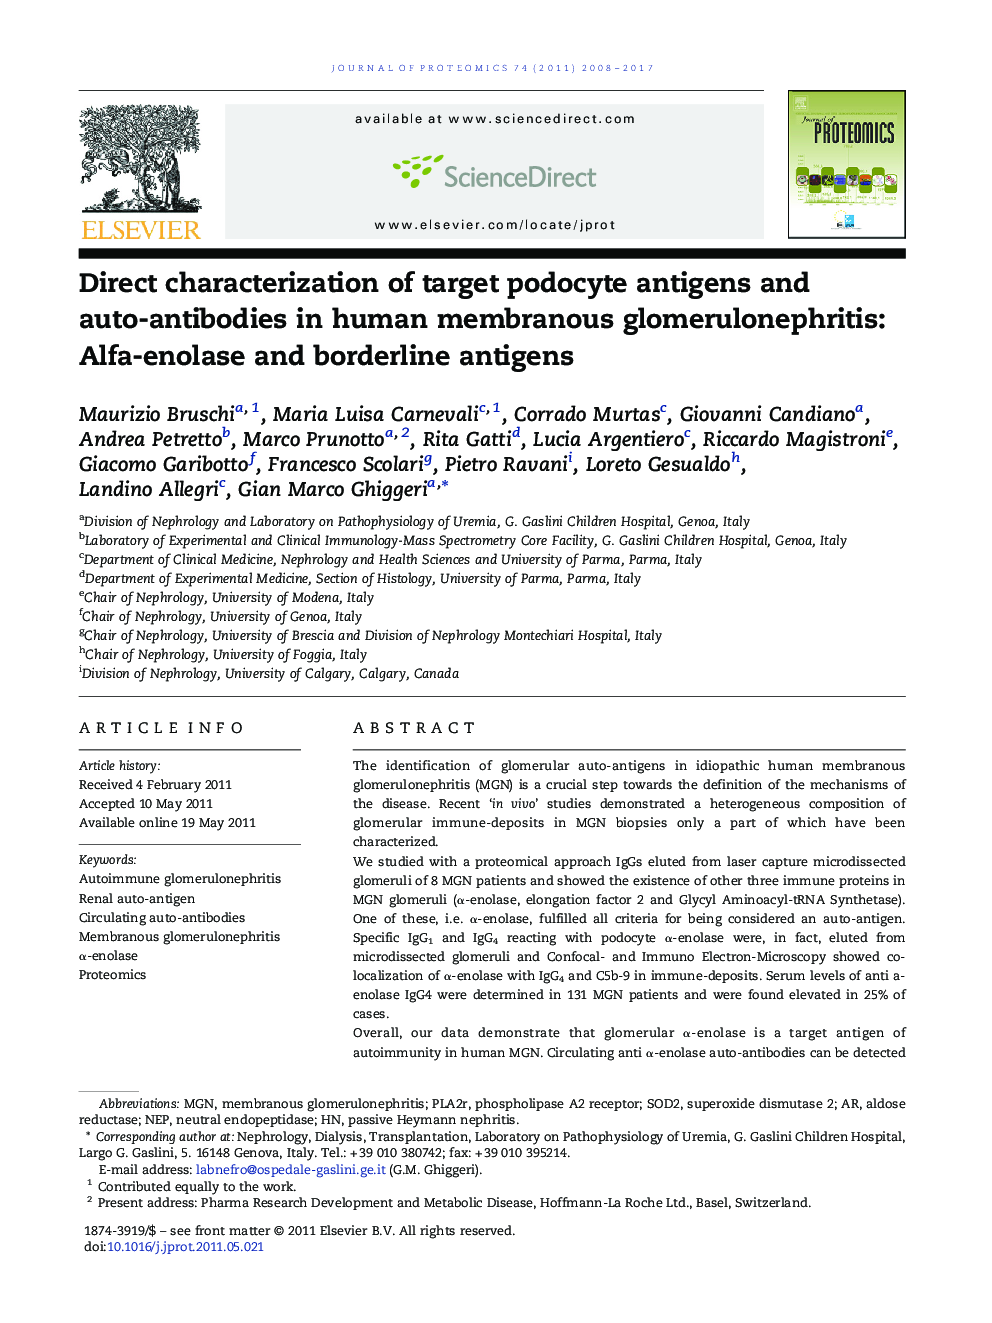 بررسی مستقیم آنتی ژن های پادوکیت هدف و آنتی بادی های خودکار در گلومرولونفریت غشایی انسانی: آلفاآنالاز و آنتی ژنهای مرزی 